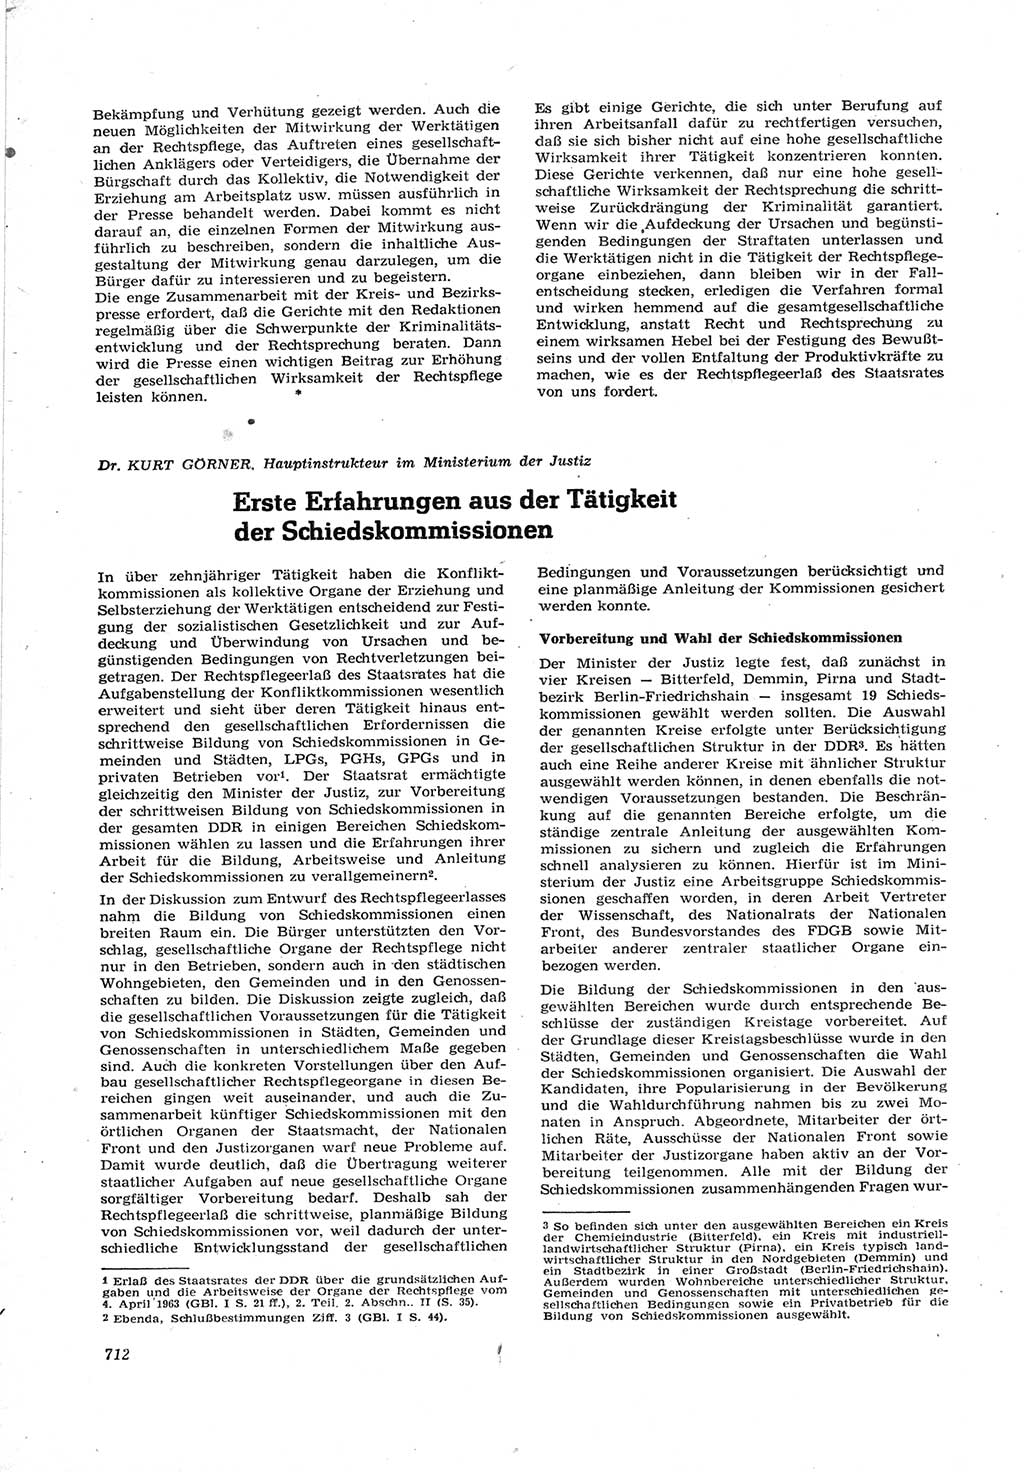 Neue Justiz (NJ), Zeitschrift für Recht und Rechtswissenschaft [Deutsche Demokratische Republik (DDR)], 17. Jahrgang 1963, Seite 712 (NJ DDR 1963, S. 712)